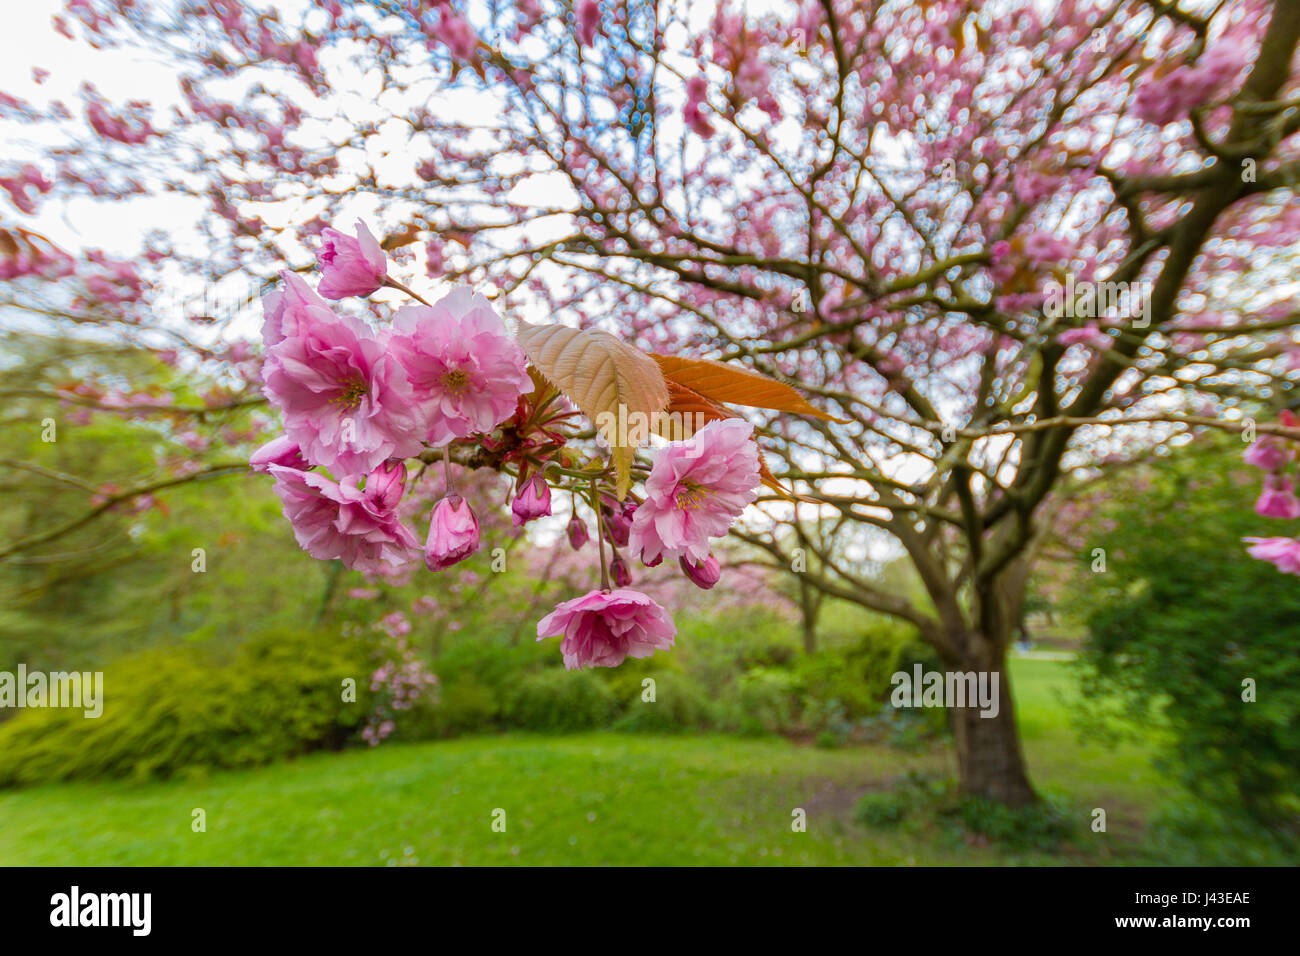 Close-up auf die rosa Blüten und Blätter von Prunus Serrulata Kwanzan Kirsche Baum in Jesmond Dene Park in Newcastle, UK erschossen auf einer April Frühling afte Stockfoto